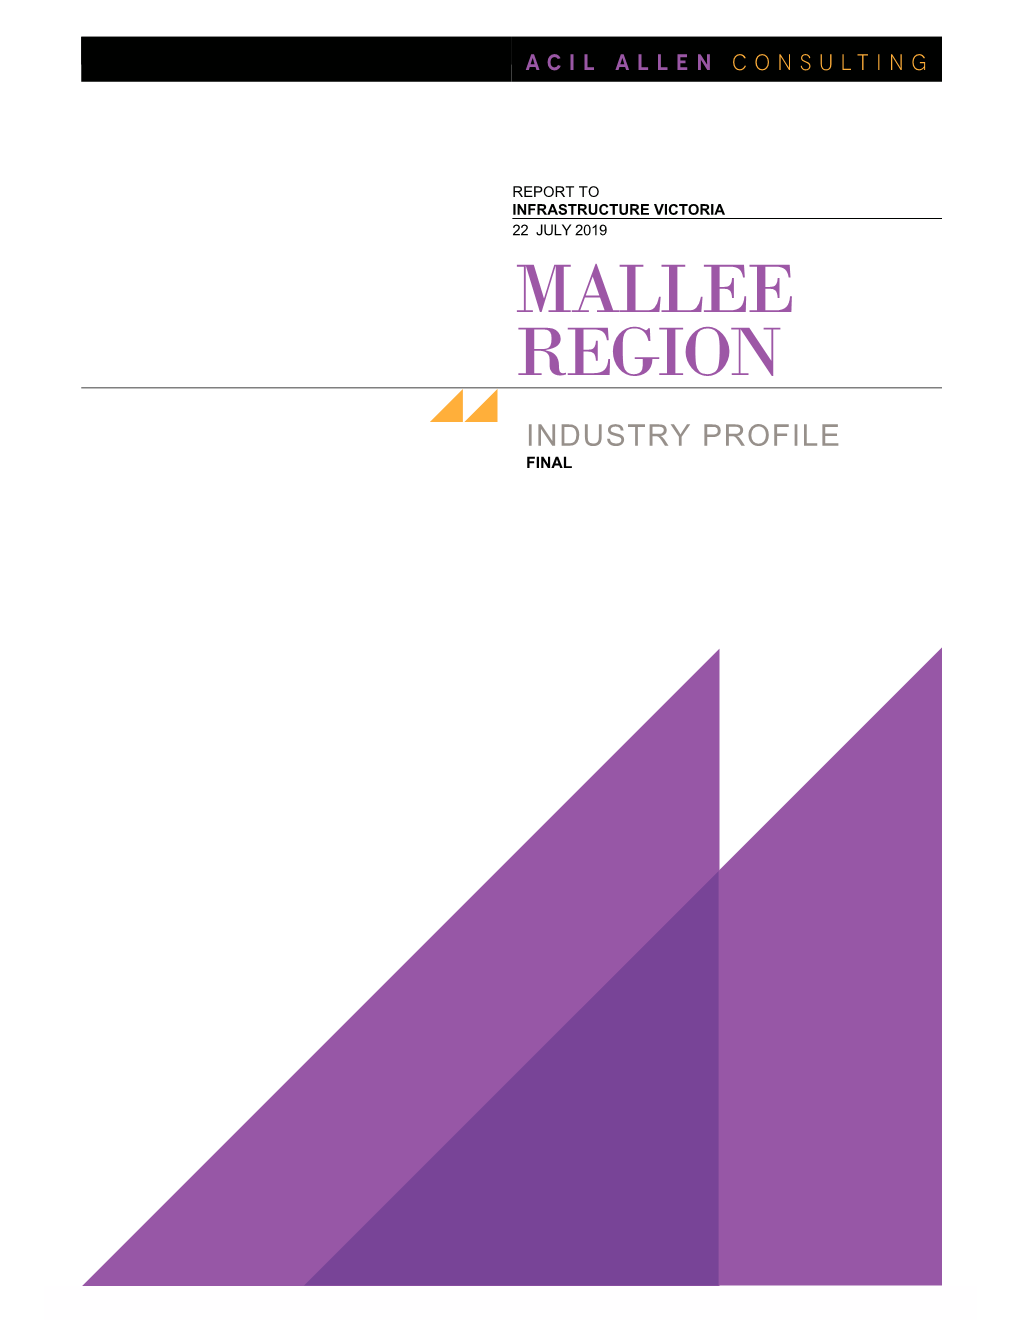 Mallee Region